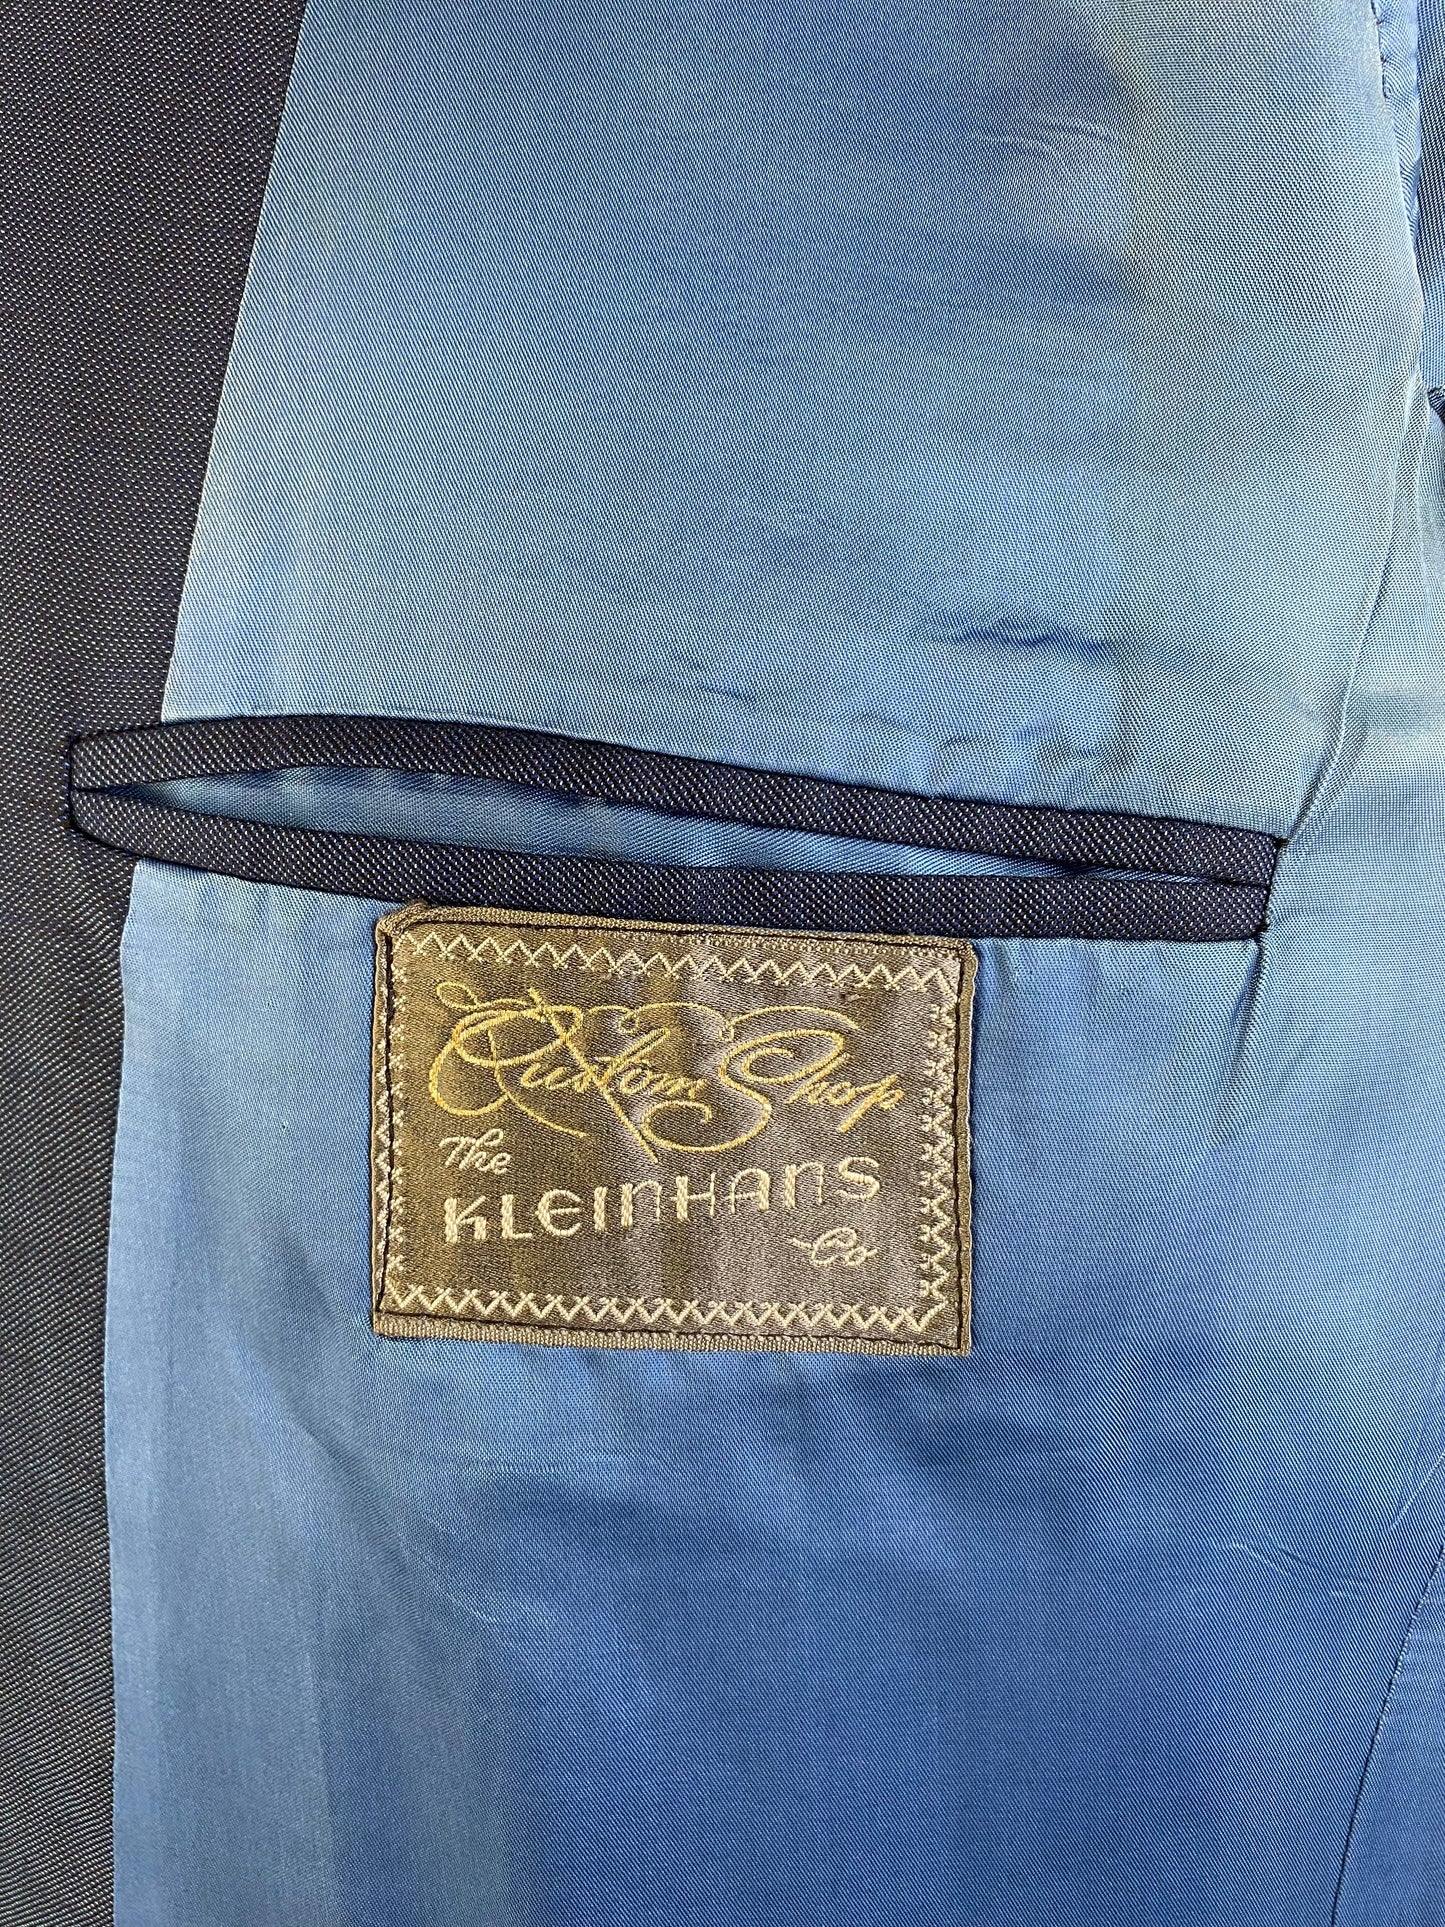 1970s Vintage Men's Suit, Blue Sharkskin 2-Piece Suit, Kleinhans, AS IS, C46